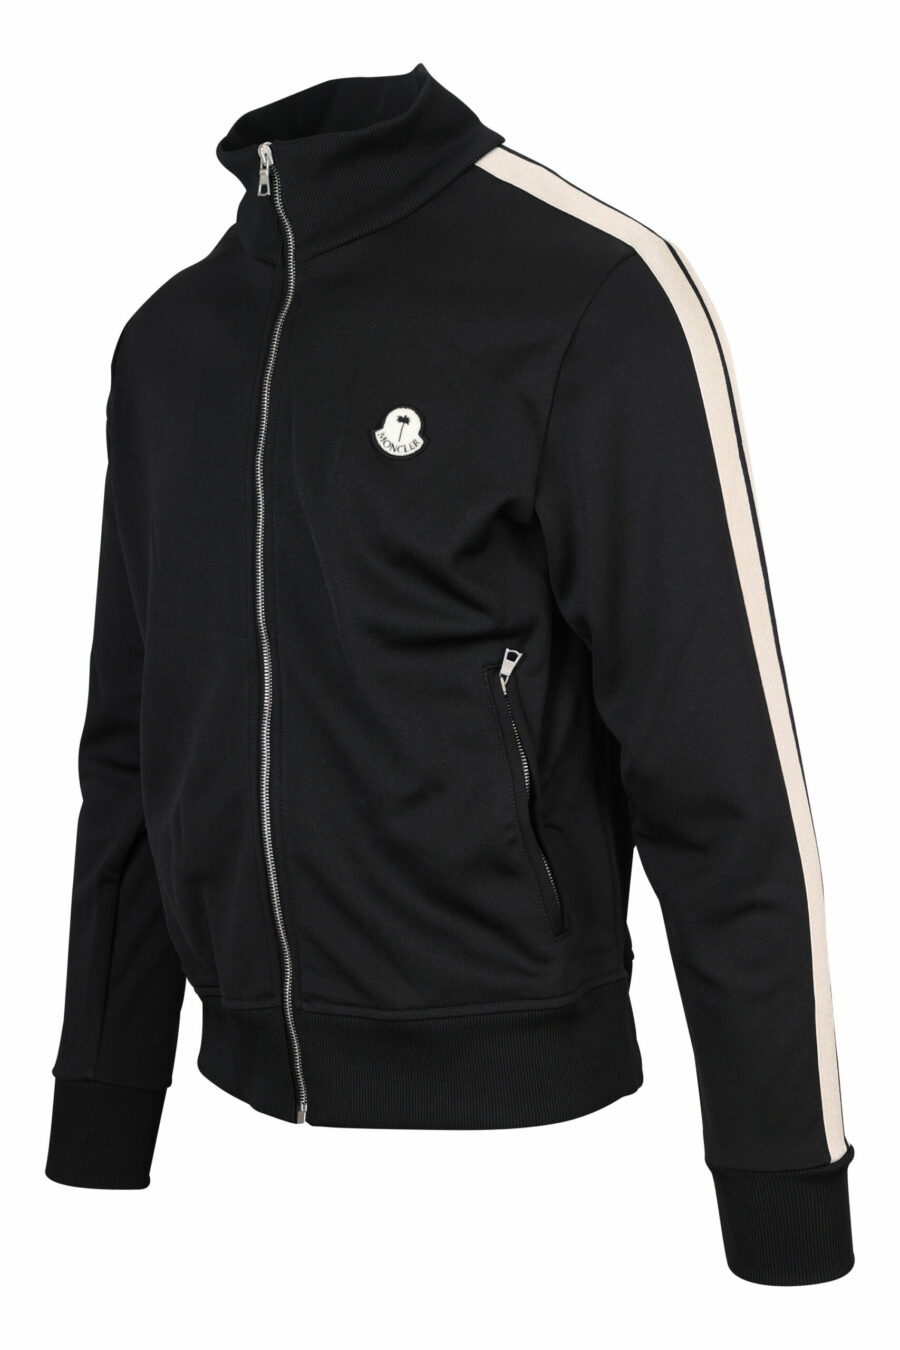 Schwarzes Sweatshirt mit Reißverschluss und weißen Seitenstreifen - 8057151109108 1 skaliert